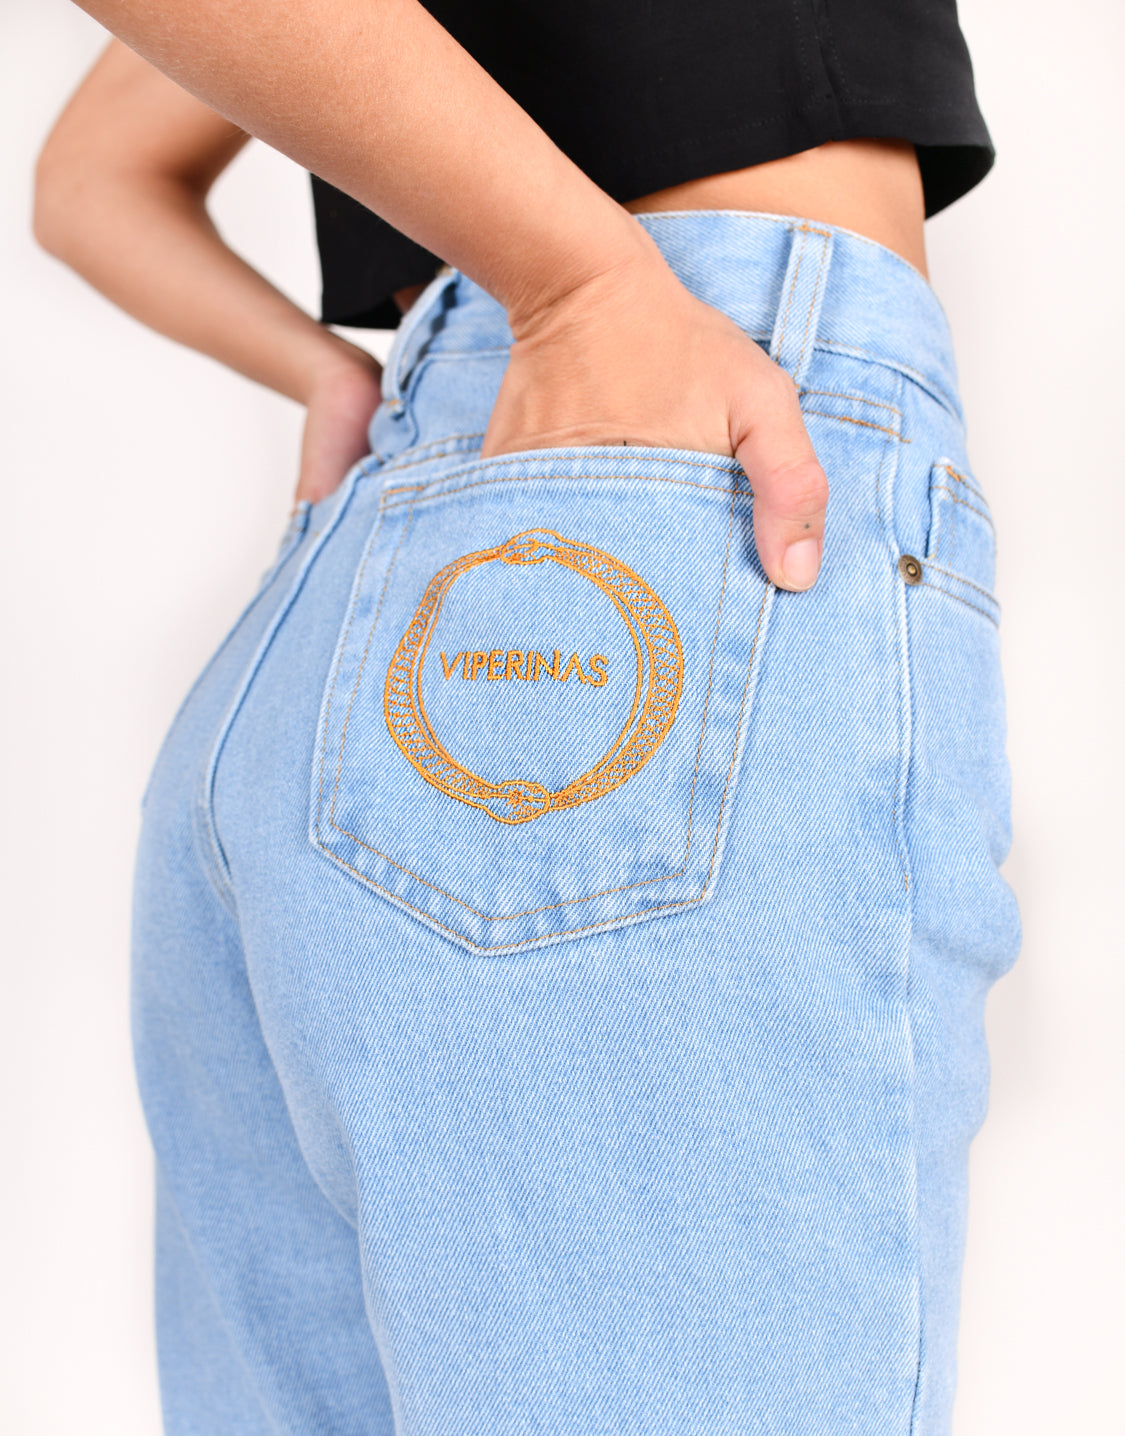 Viperinas Online Store | Jeans Early 90s  | Composición:  Composición: 100% algodón Material Sostenible  | Envíos a todo el mundo | Marca de Ropa canaria | Moda Mujer | Jeans Viperinas